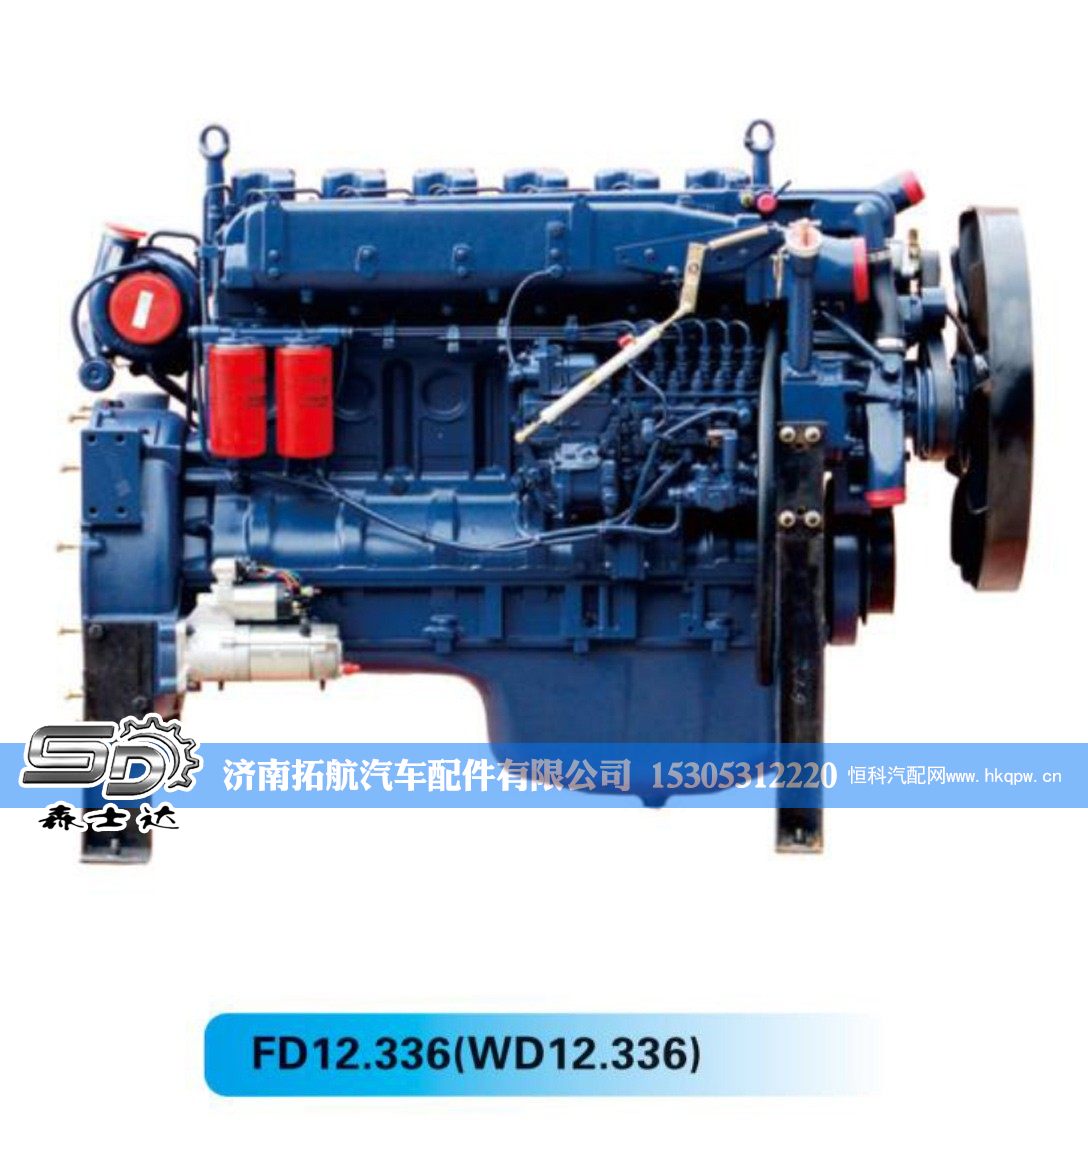 FD12.336(WD12.336),,济南拓航汽车配件有限公司